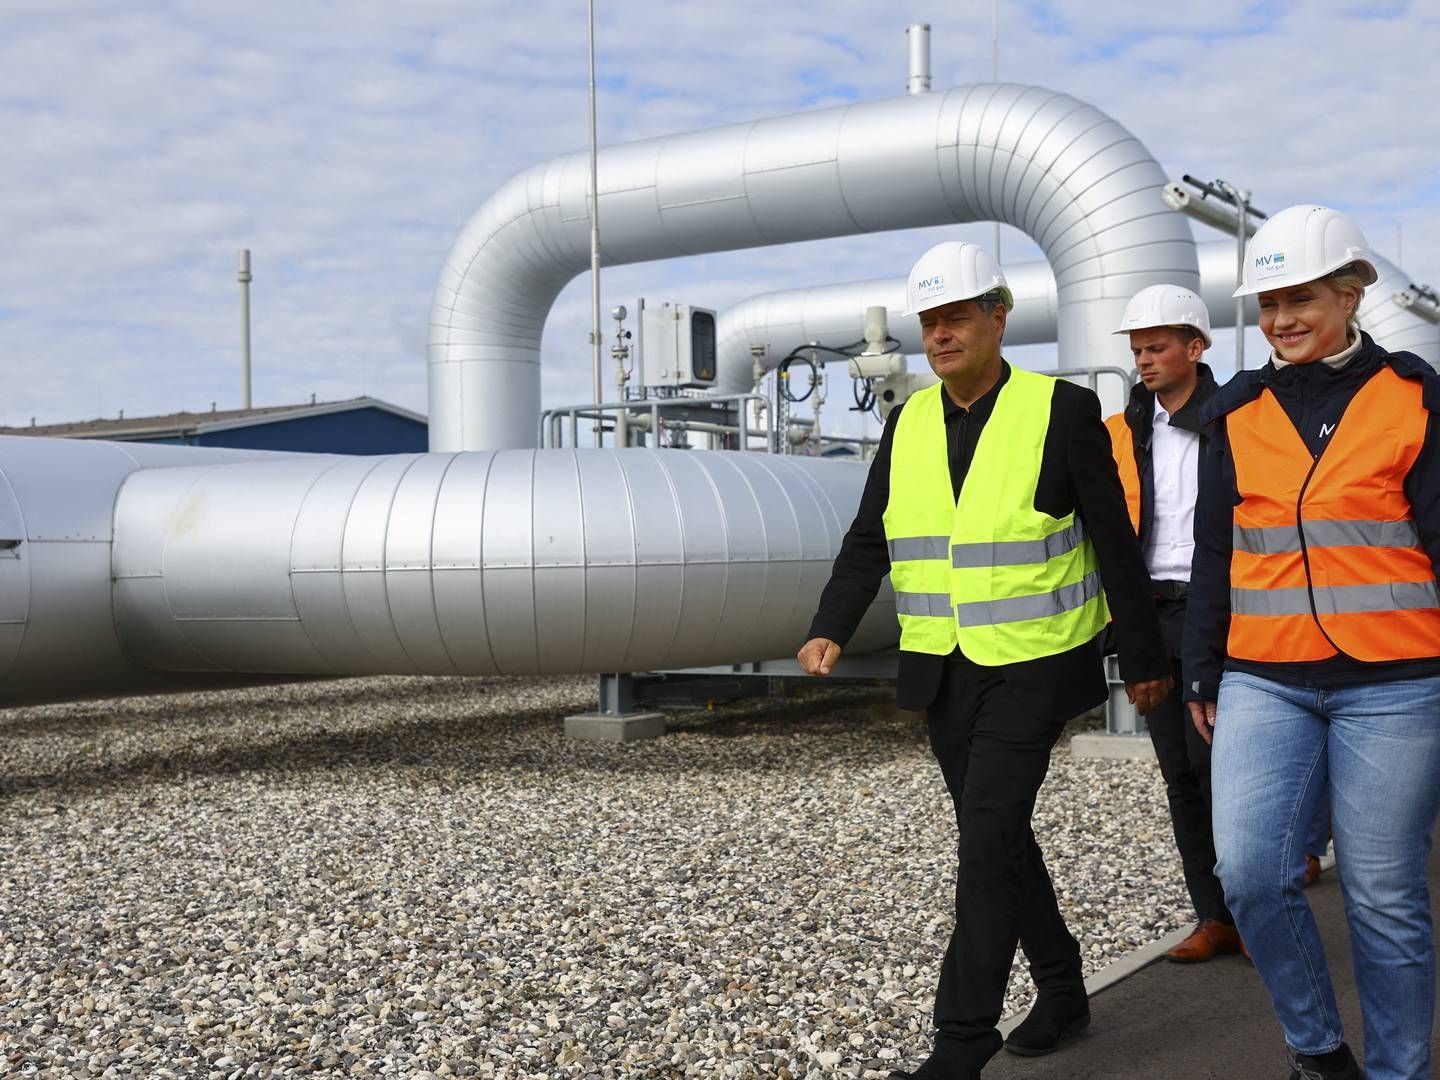 Tyskland er i gang med at bygge flere LNG-terminaler for at gøre sig uafhængig af russisk gas efter invasionen af Ukraine. Her besøger økonominister Robert Habeck en af de nye terminaler, som er ved at blive bygget. | Photo: Fabrizio Bensch/Reuters/Ritzau Scanpix